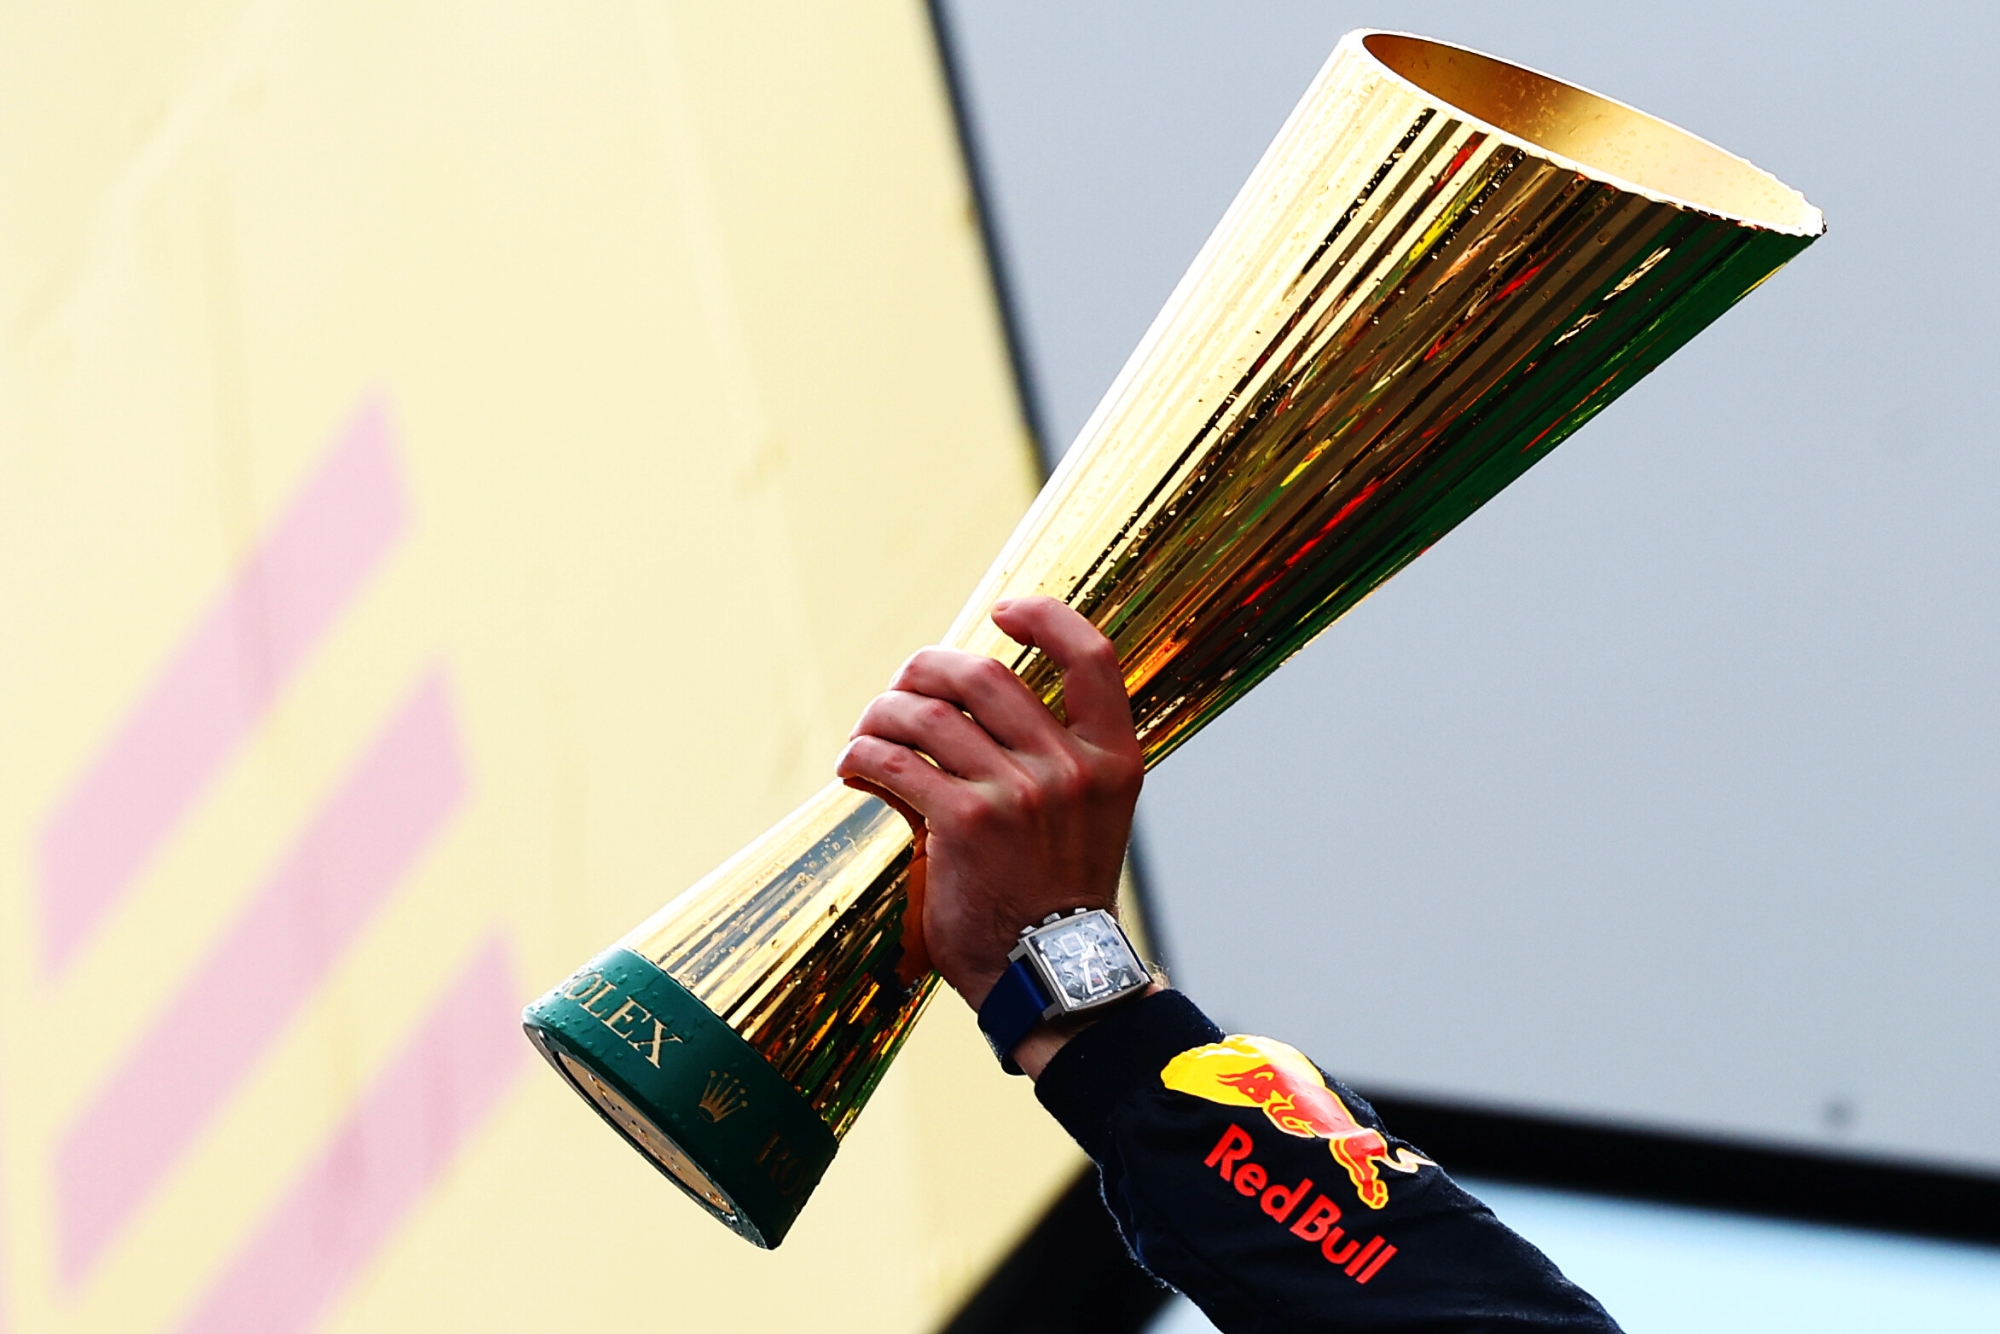 Már hetek óta Max Verstappen csuklóján díszeleghet az egyedi tervezésű ketyegő. (Fotó: Mark Thompson/Getty Images/Red Bull Content Pool)